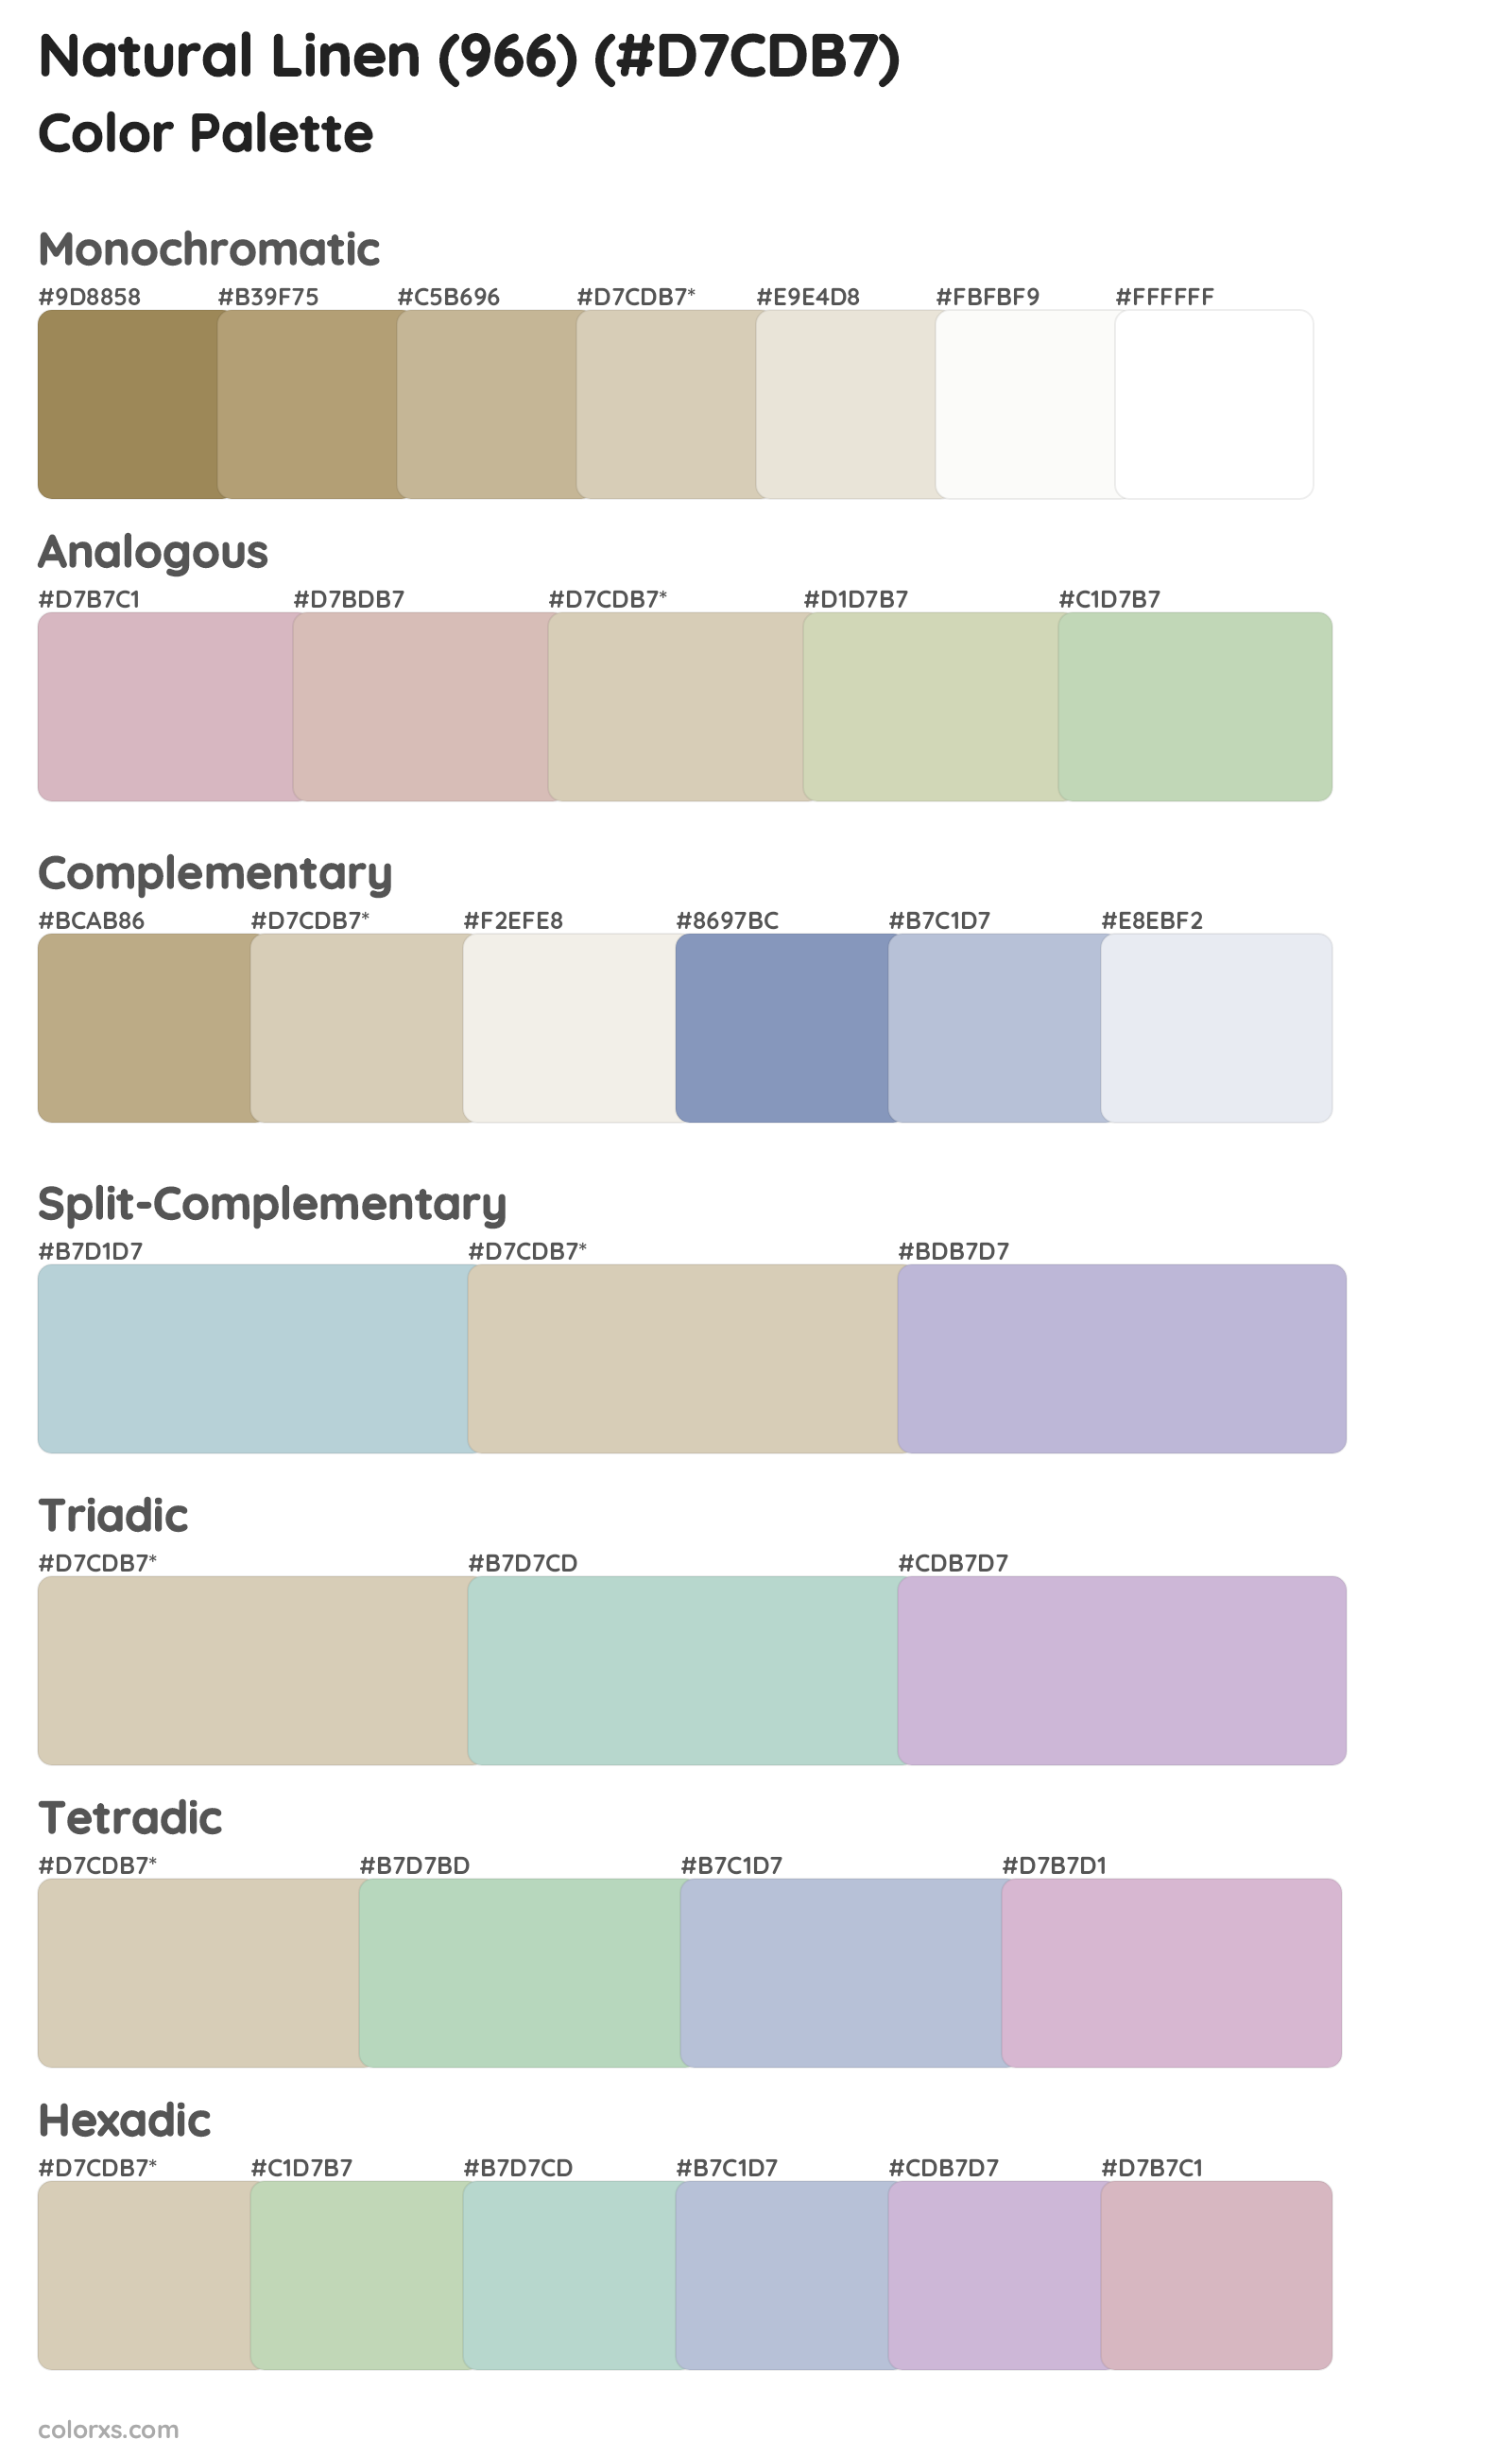 Natural Linen (966) Color Scheme Palettes